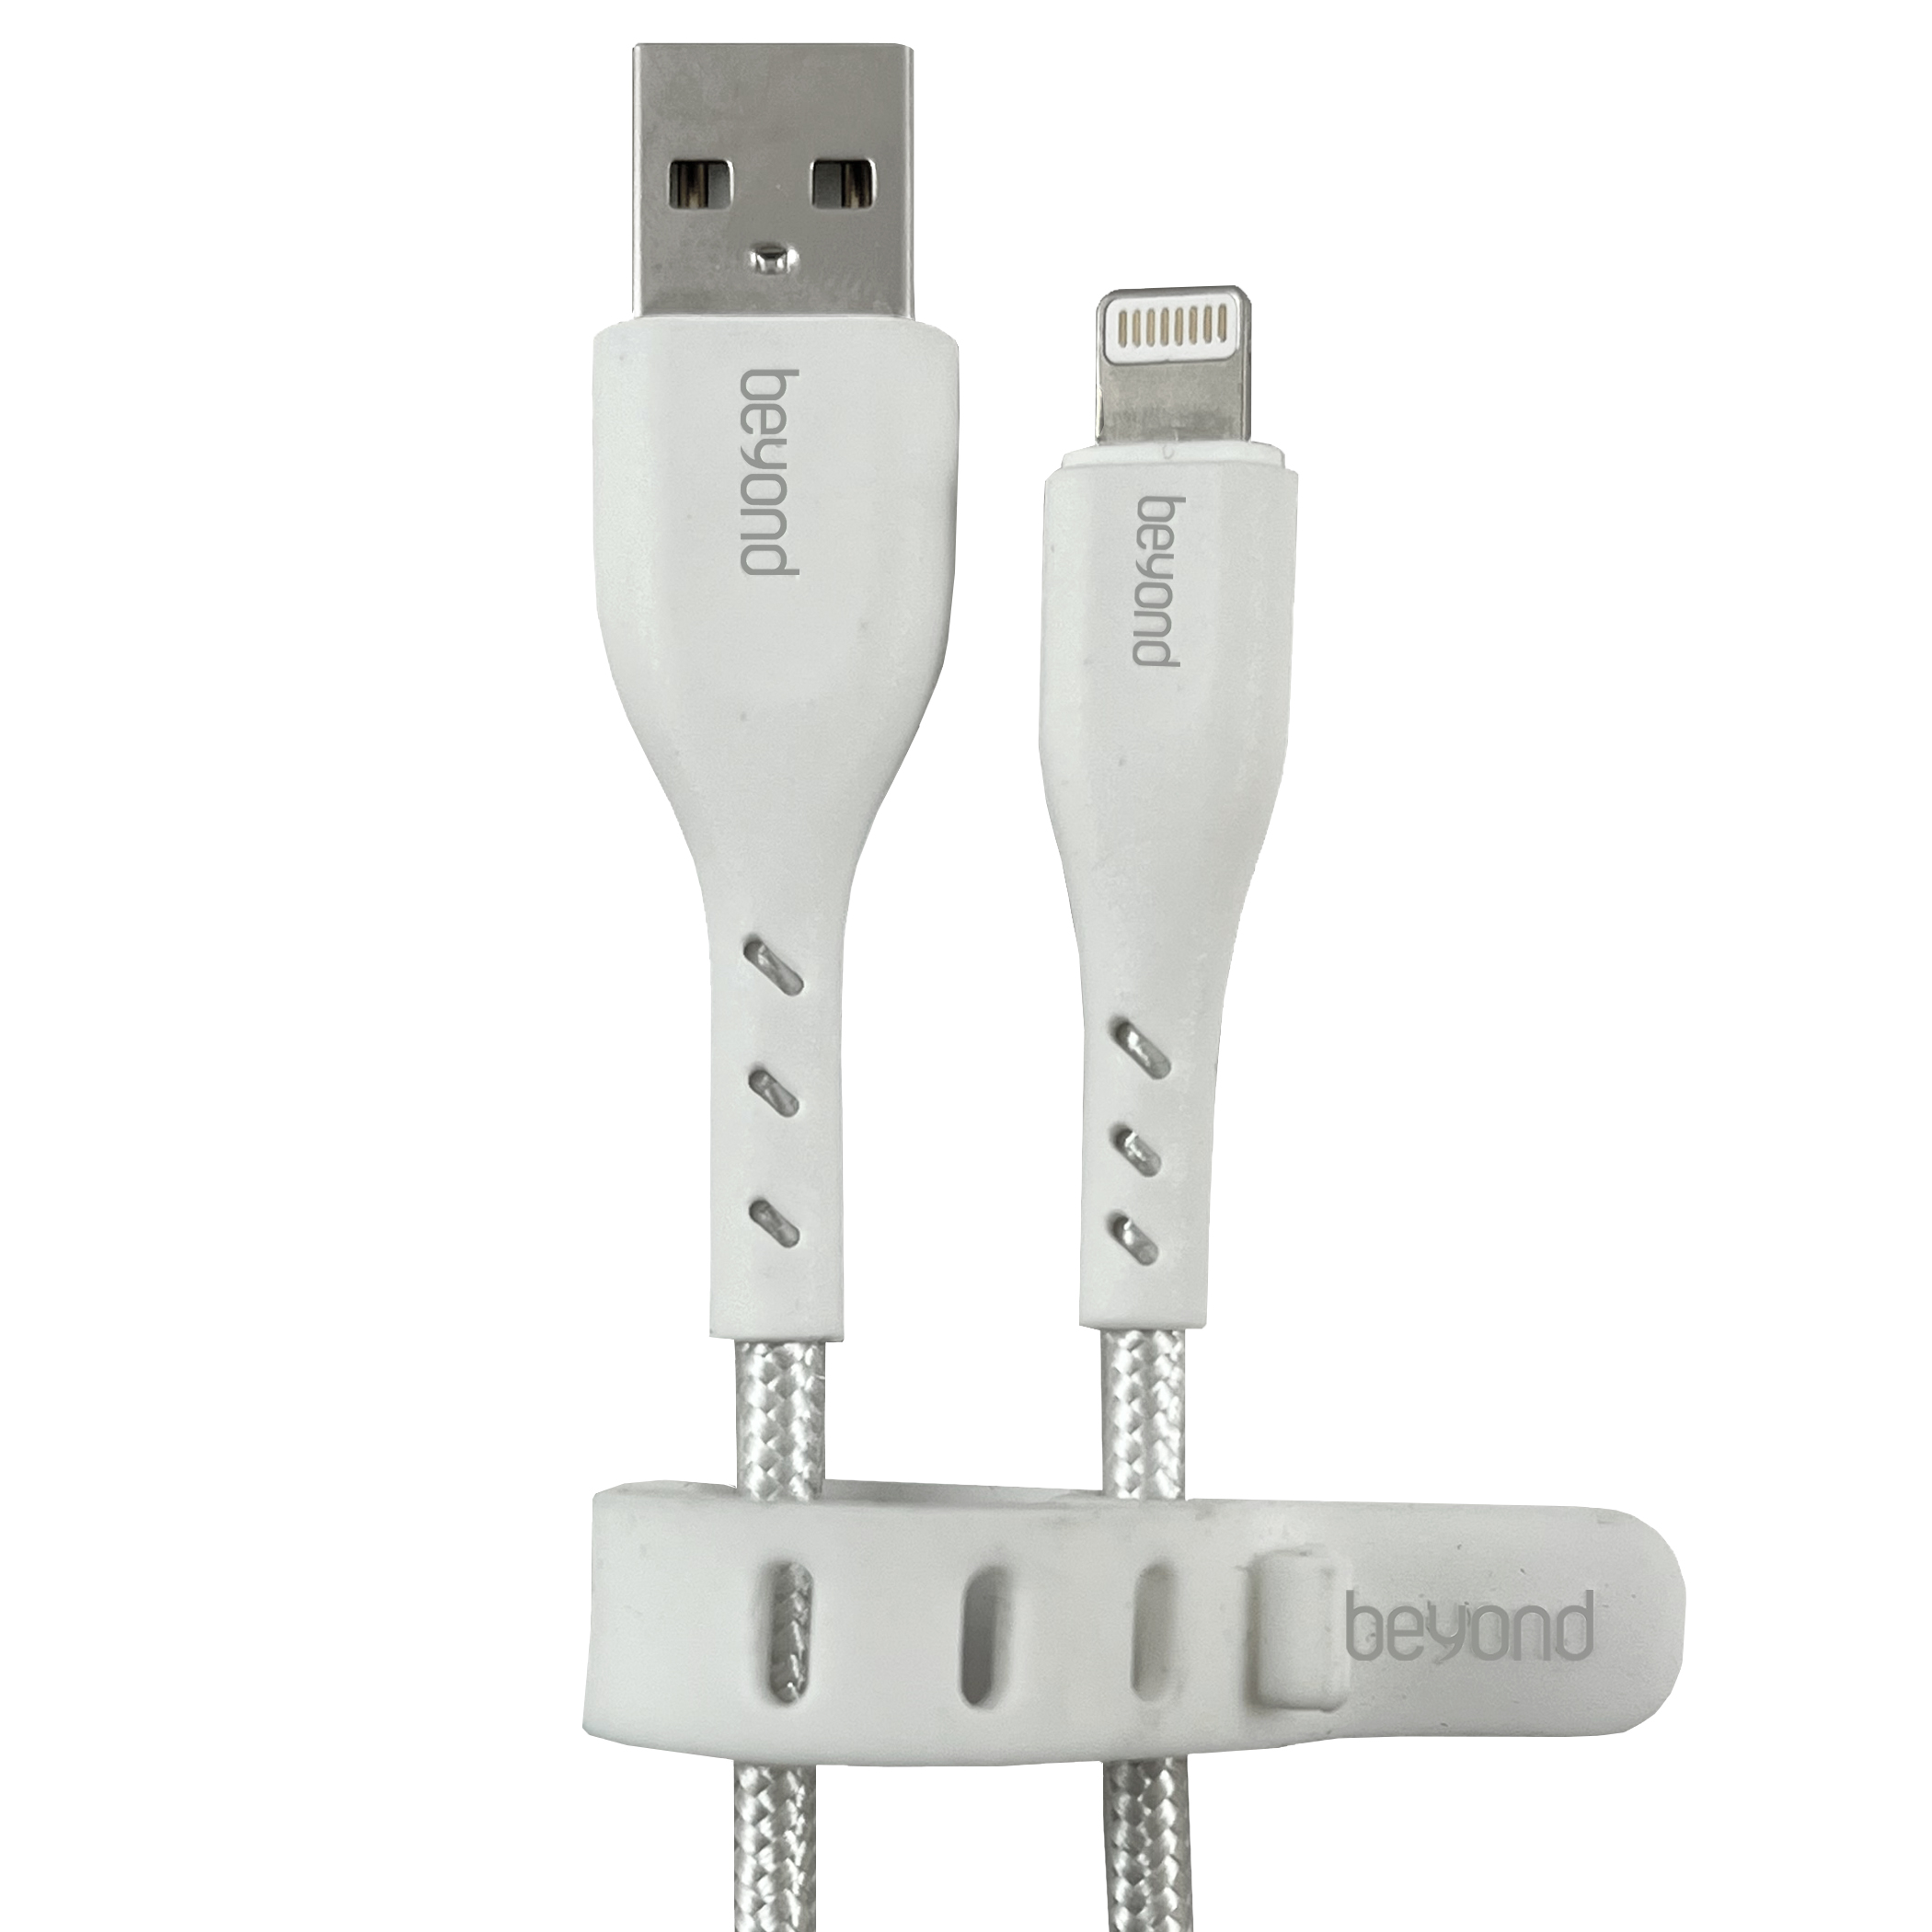  کابل تبدیل USB به لایتنینگ بیاند مدل BUL-401 CHARGE DATA طول 1 متر